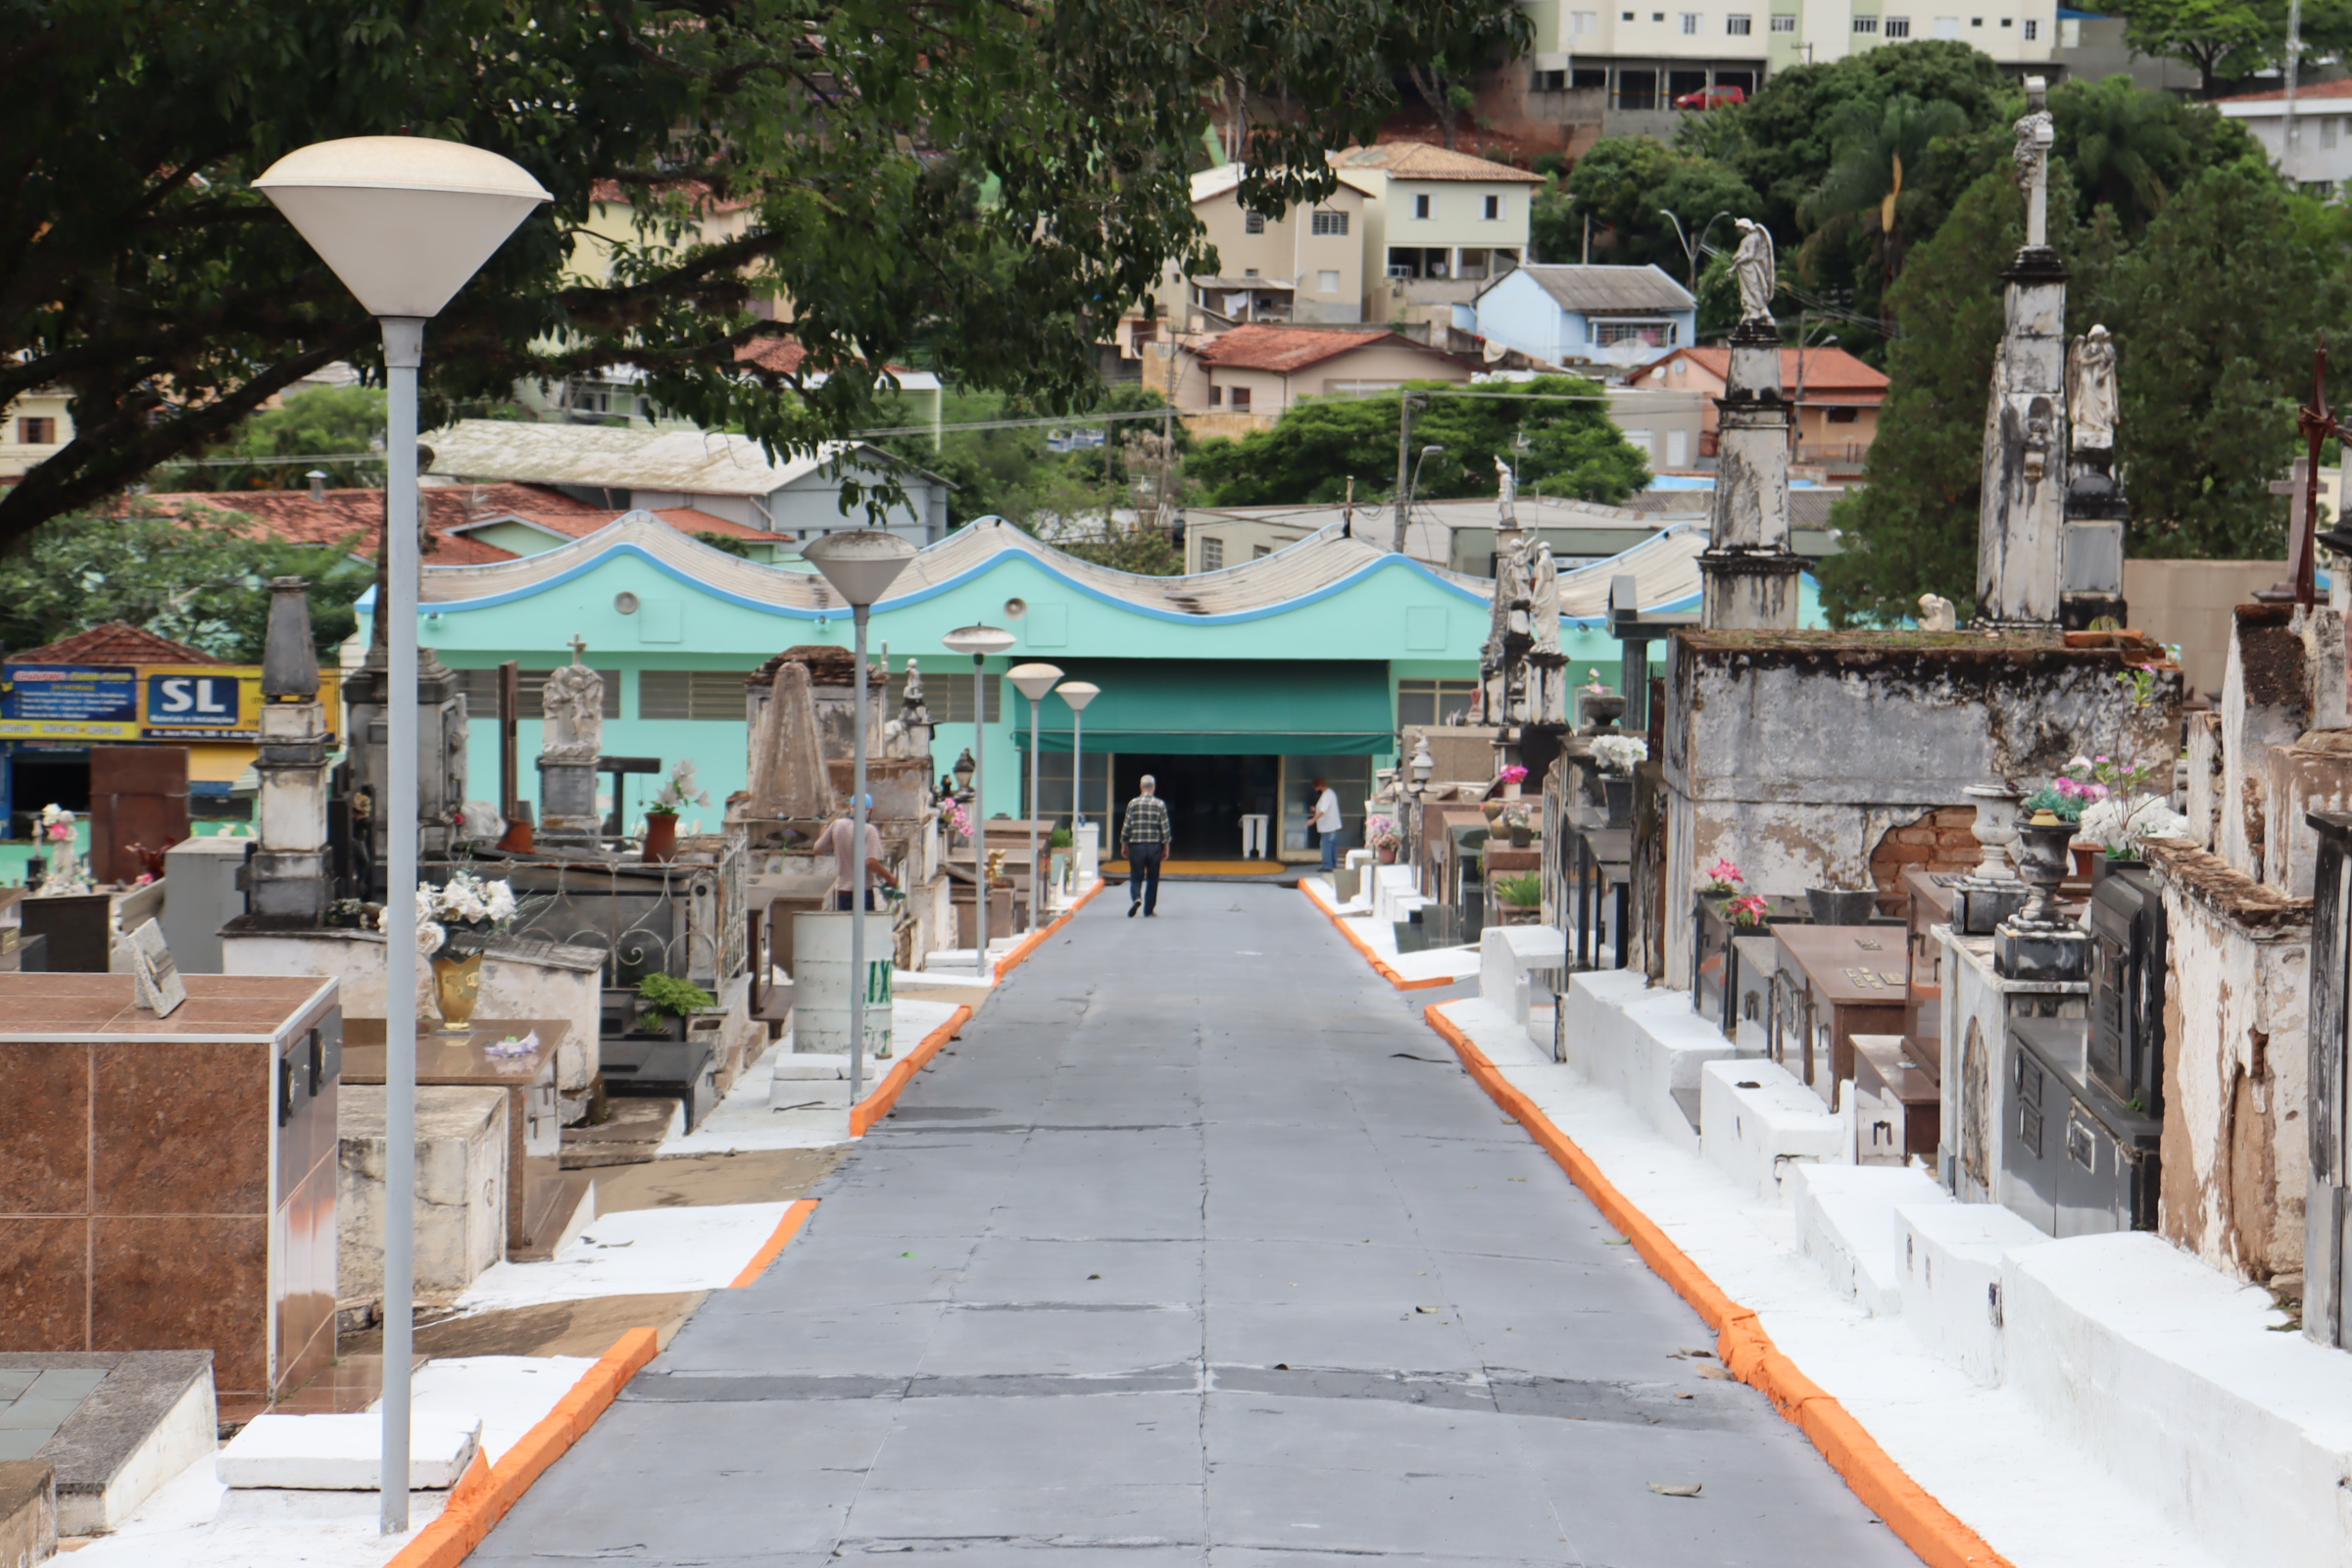 Cemitério funcionará das 7h às 17h todos os dias do final de semana prolongado